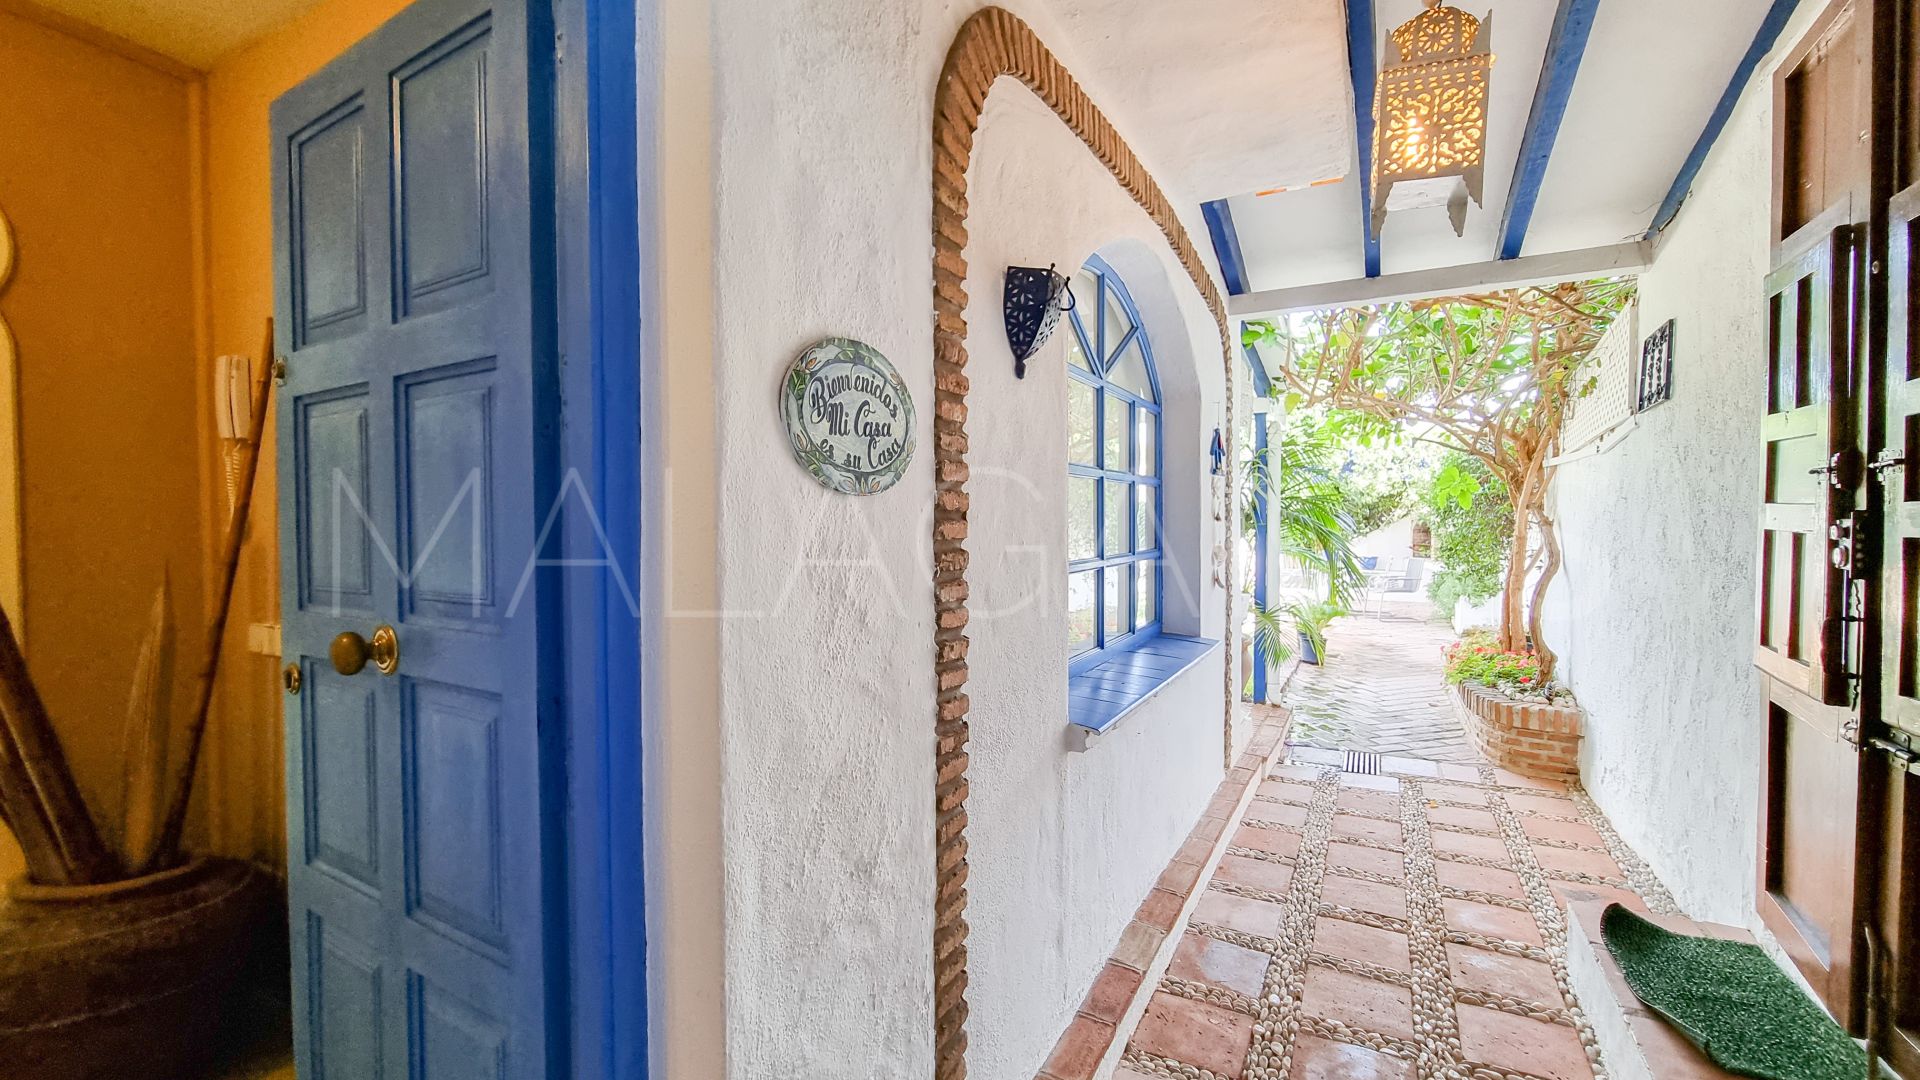 Marbella - Puerto Banus, villa for sale